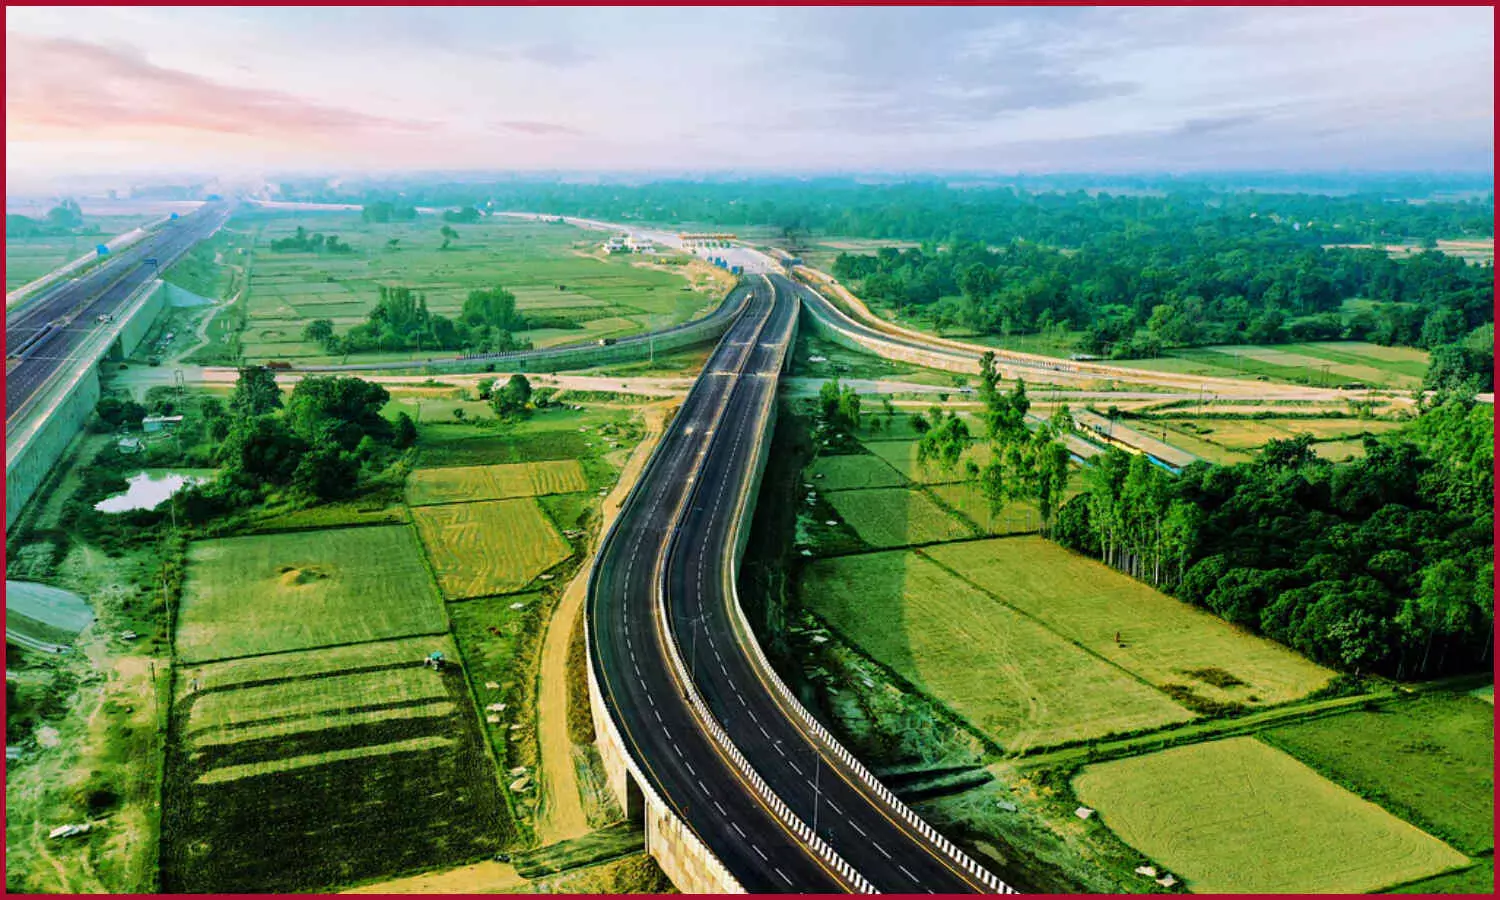 Gorakhpur Siliguri Expressway